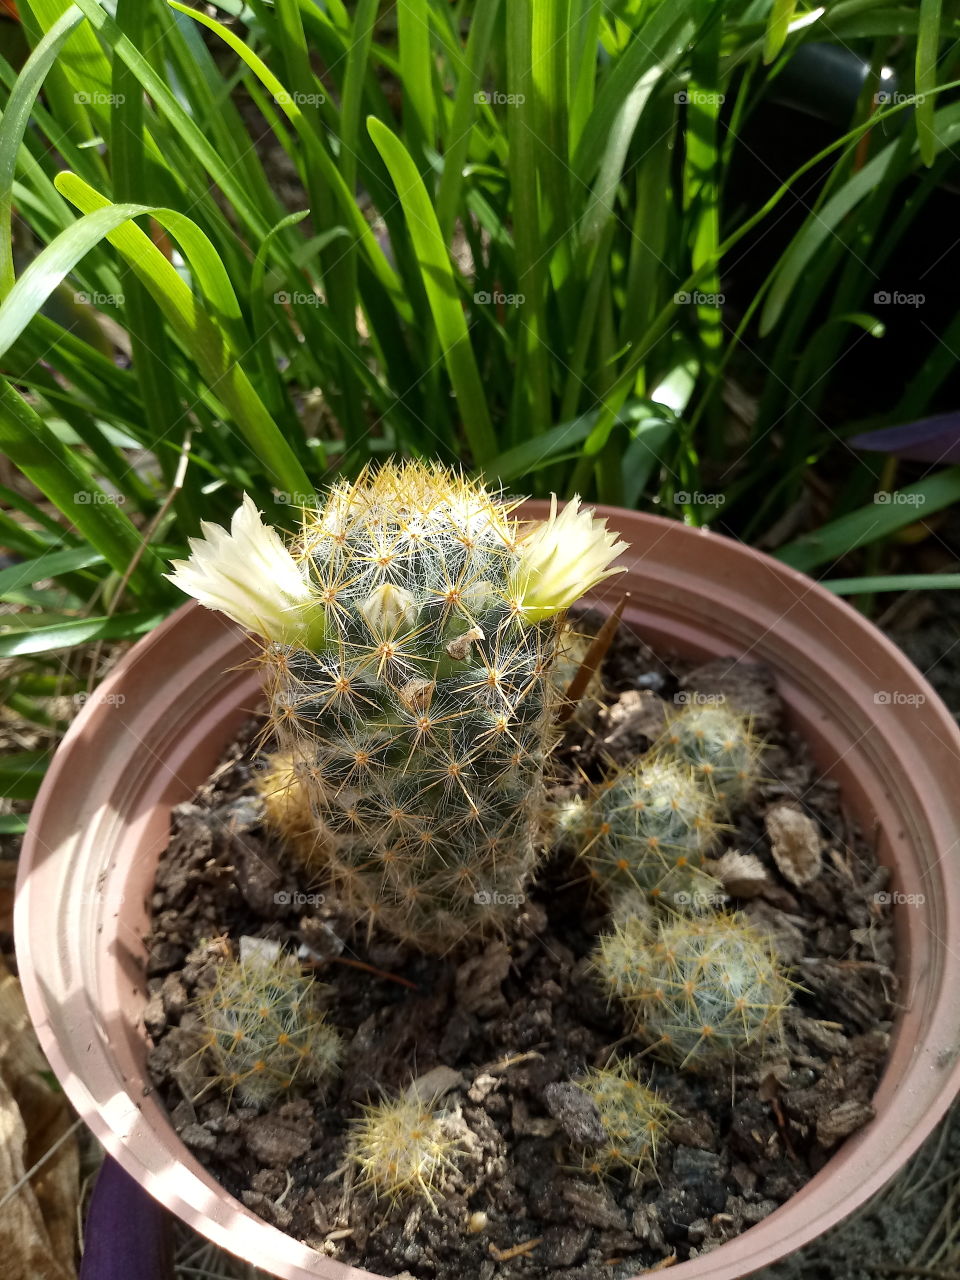 #cactus